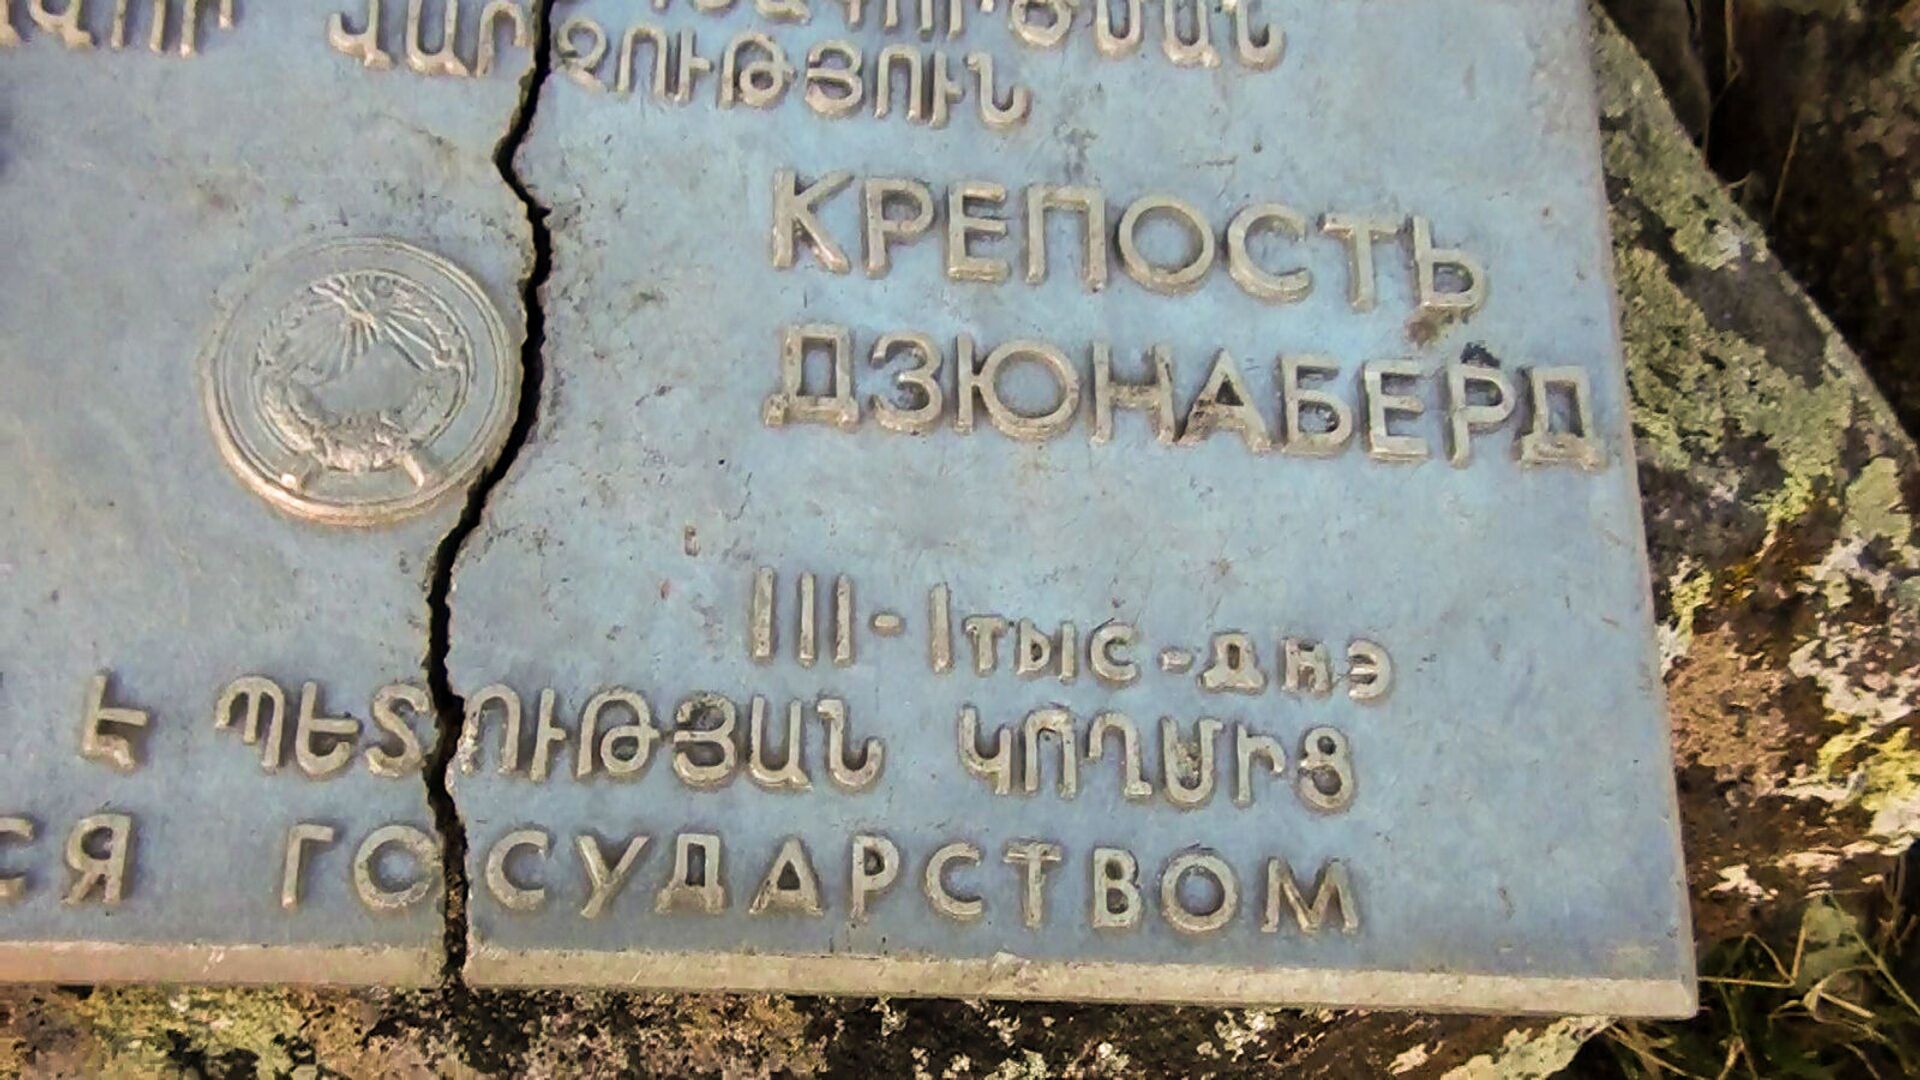 Табличка у крепости Дзюнаберд - Sputnik Արմենիա, 1920, 14.09.2021